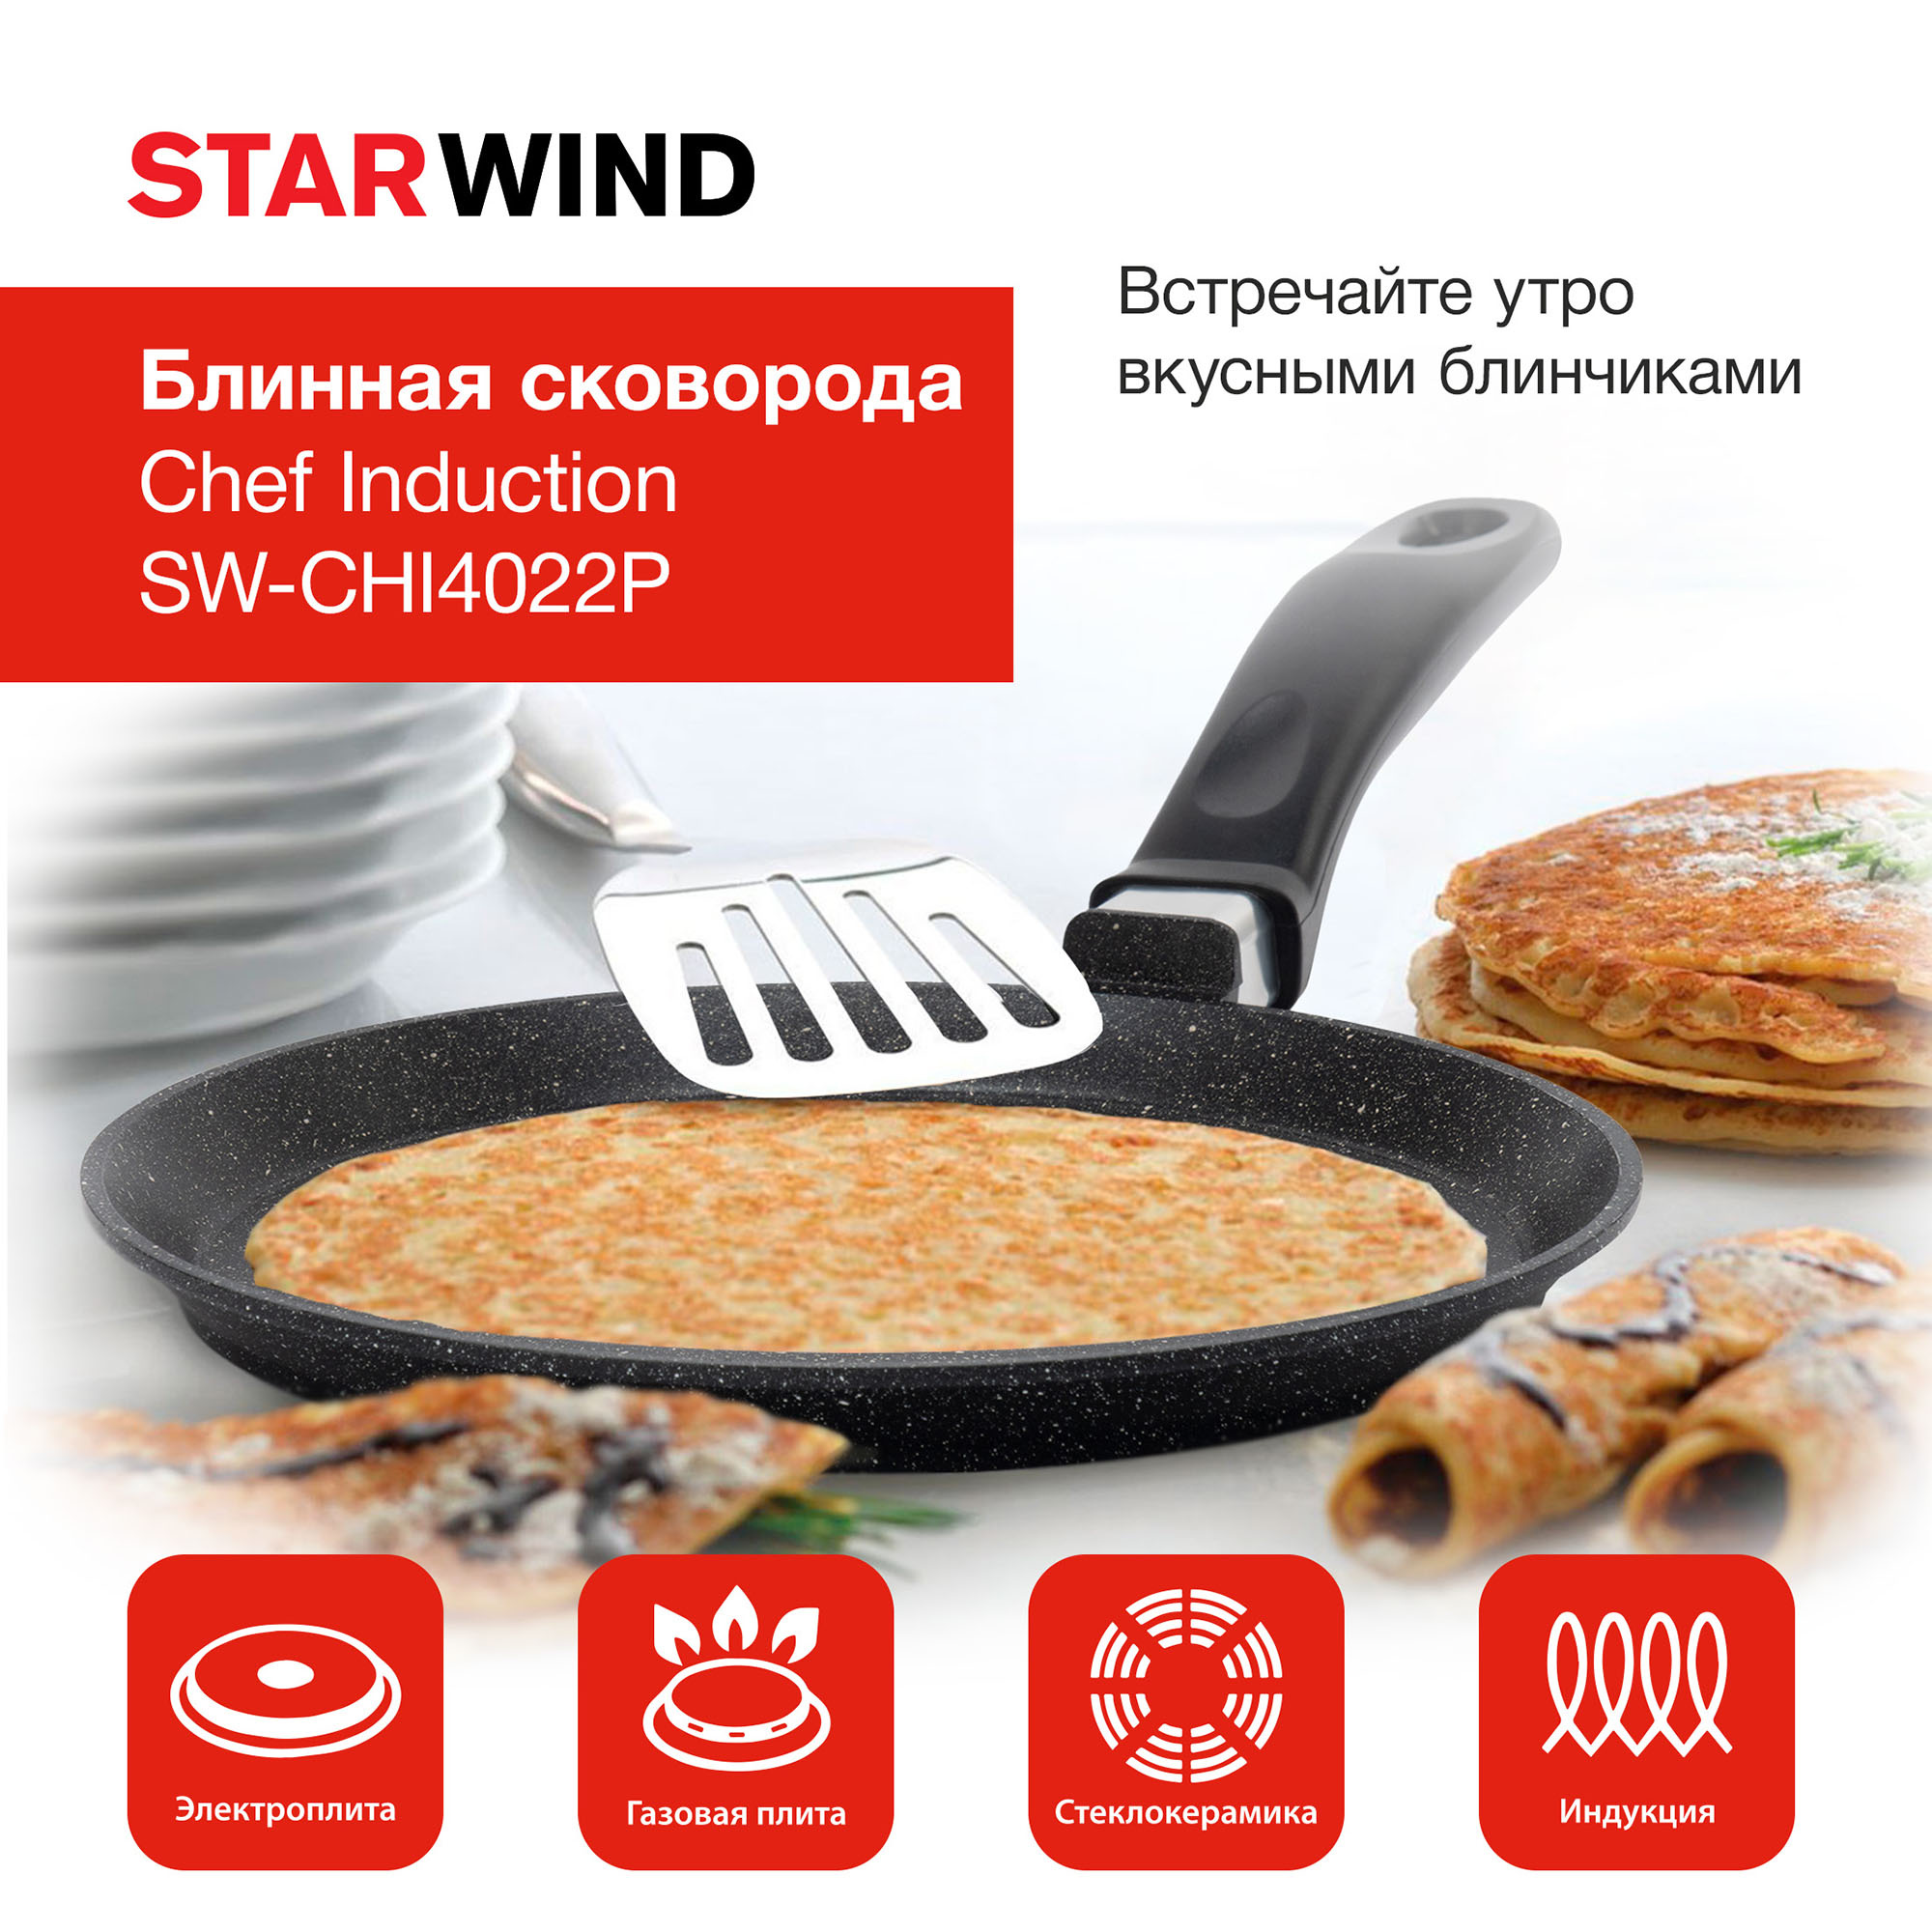 Сковорода блинная Starwind Chef Induction SW-CHI4022P круглая 22см покрытие: Pfluon ручка несъемная (без крышки) черный (SW-CHI4022P/КОР)